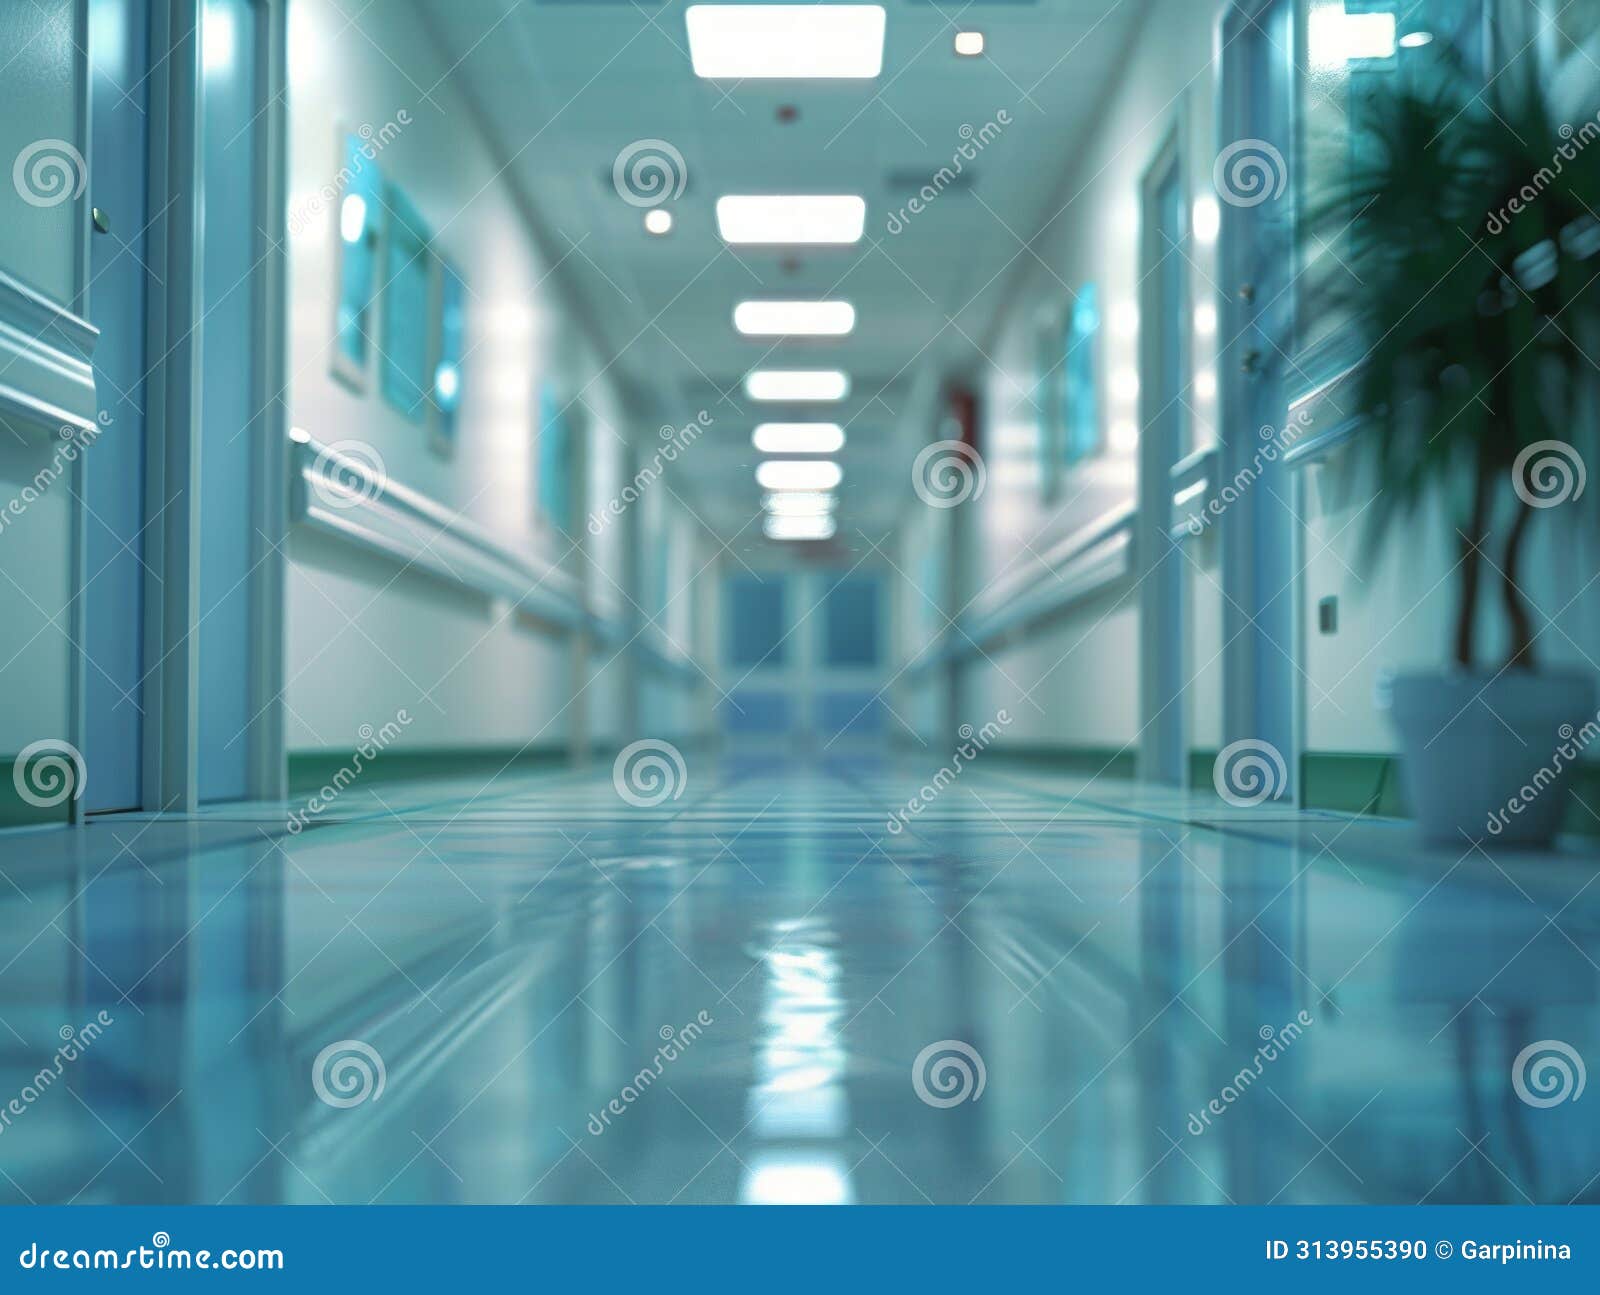 immagine serena e sfocata di un corridoio d'ospedale vuoto, immerso in una luce fresca e rasserenante.